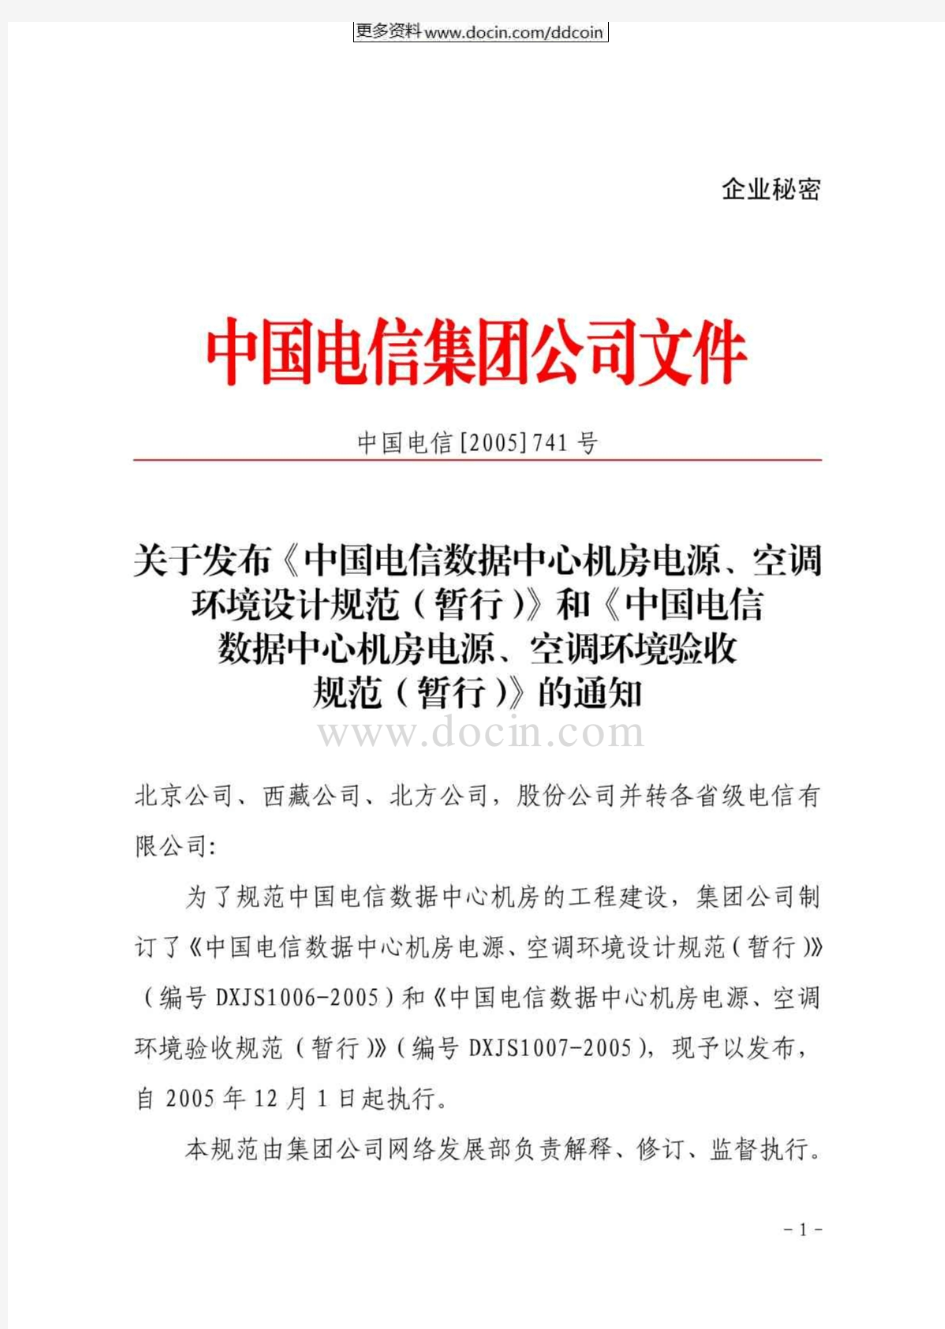 【最新】《中国电信数据中心机房电源、空调环境设计规范》